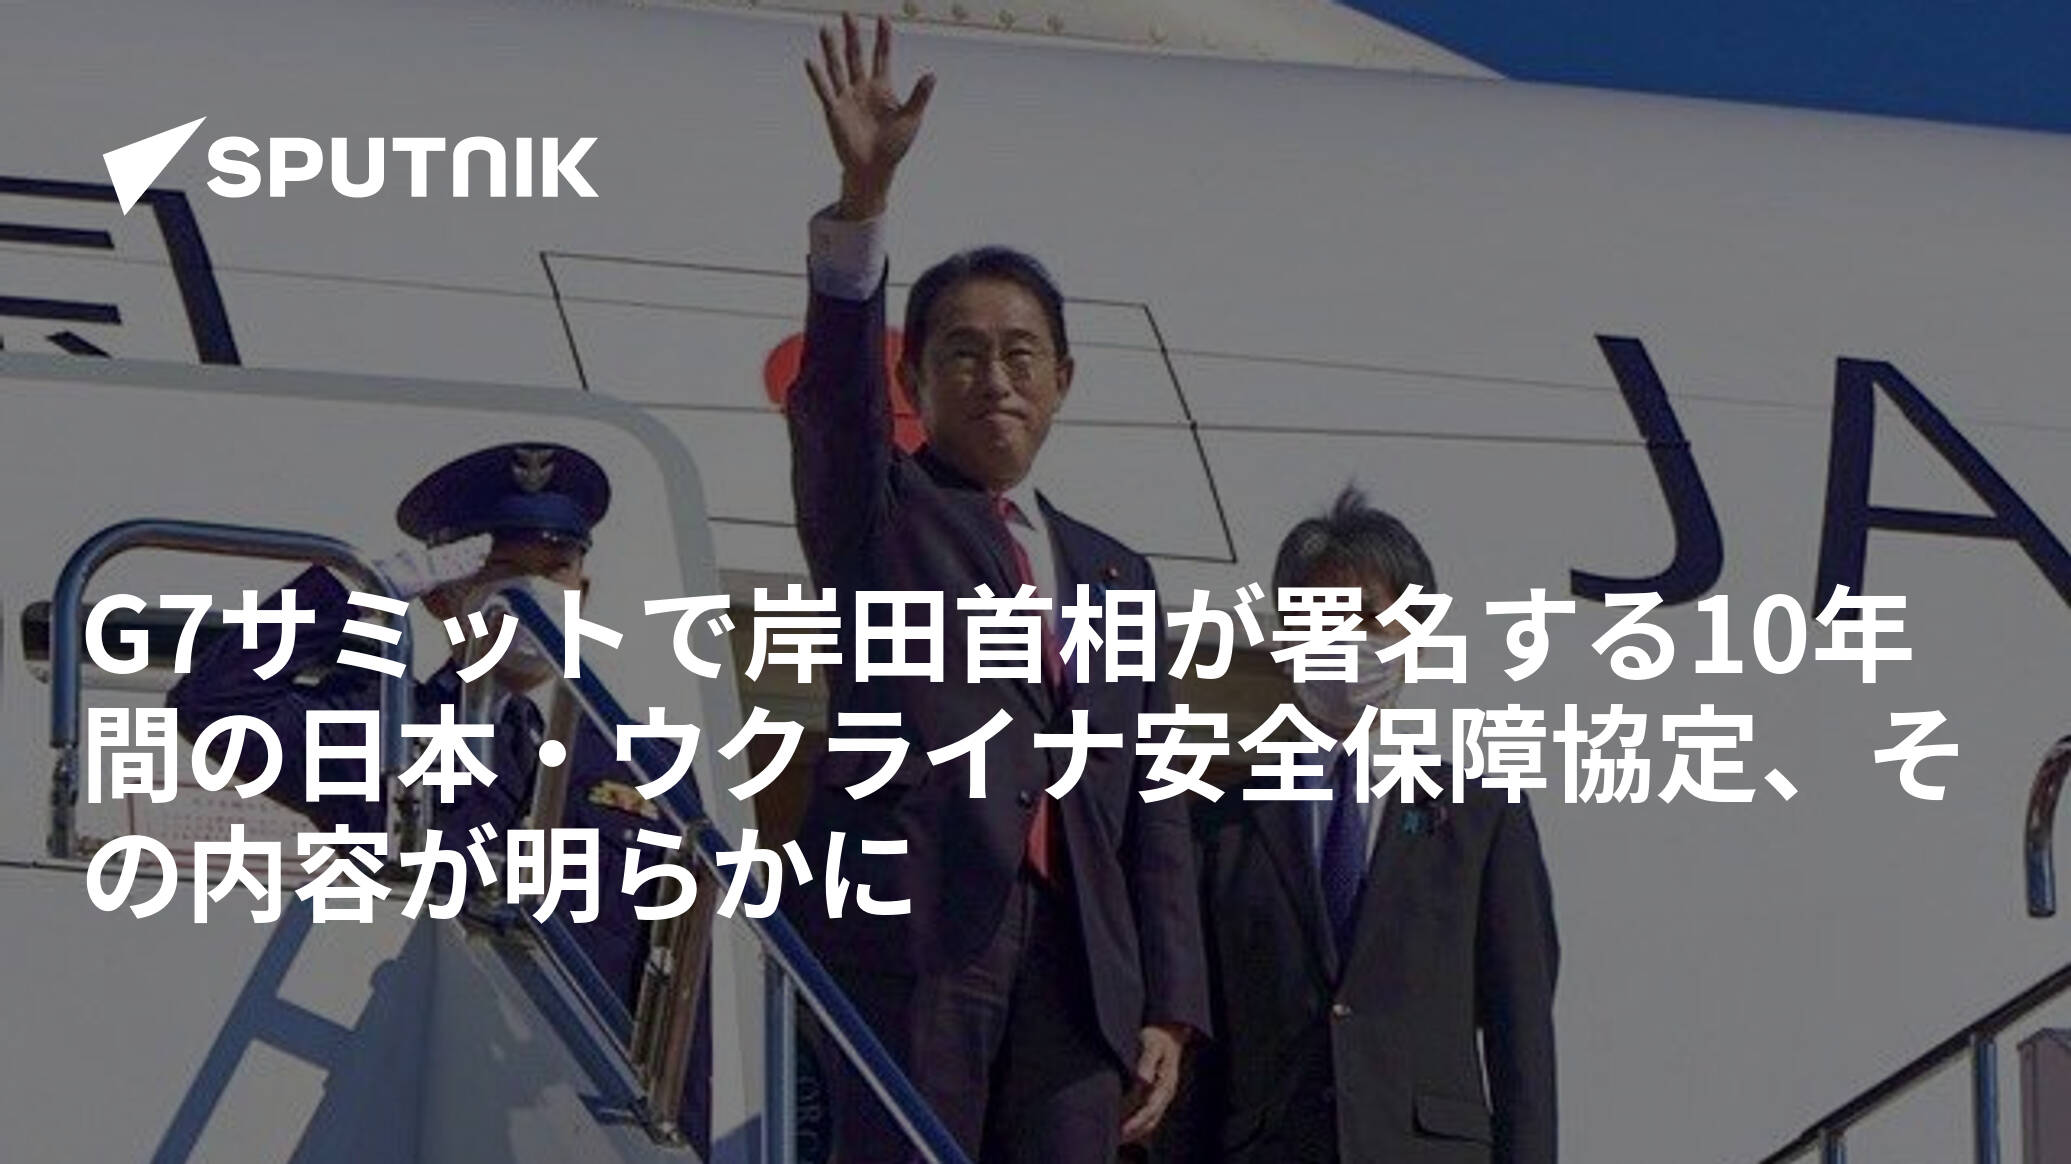 G7サミットで岸田首相が署名する10年間の日本・ウクライナ安全保障協定、その内容が明らかに